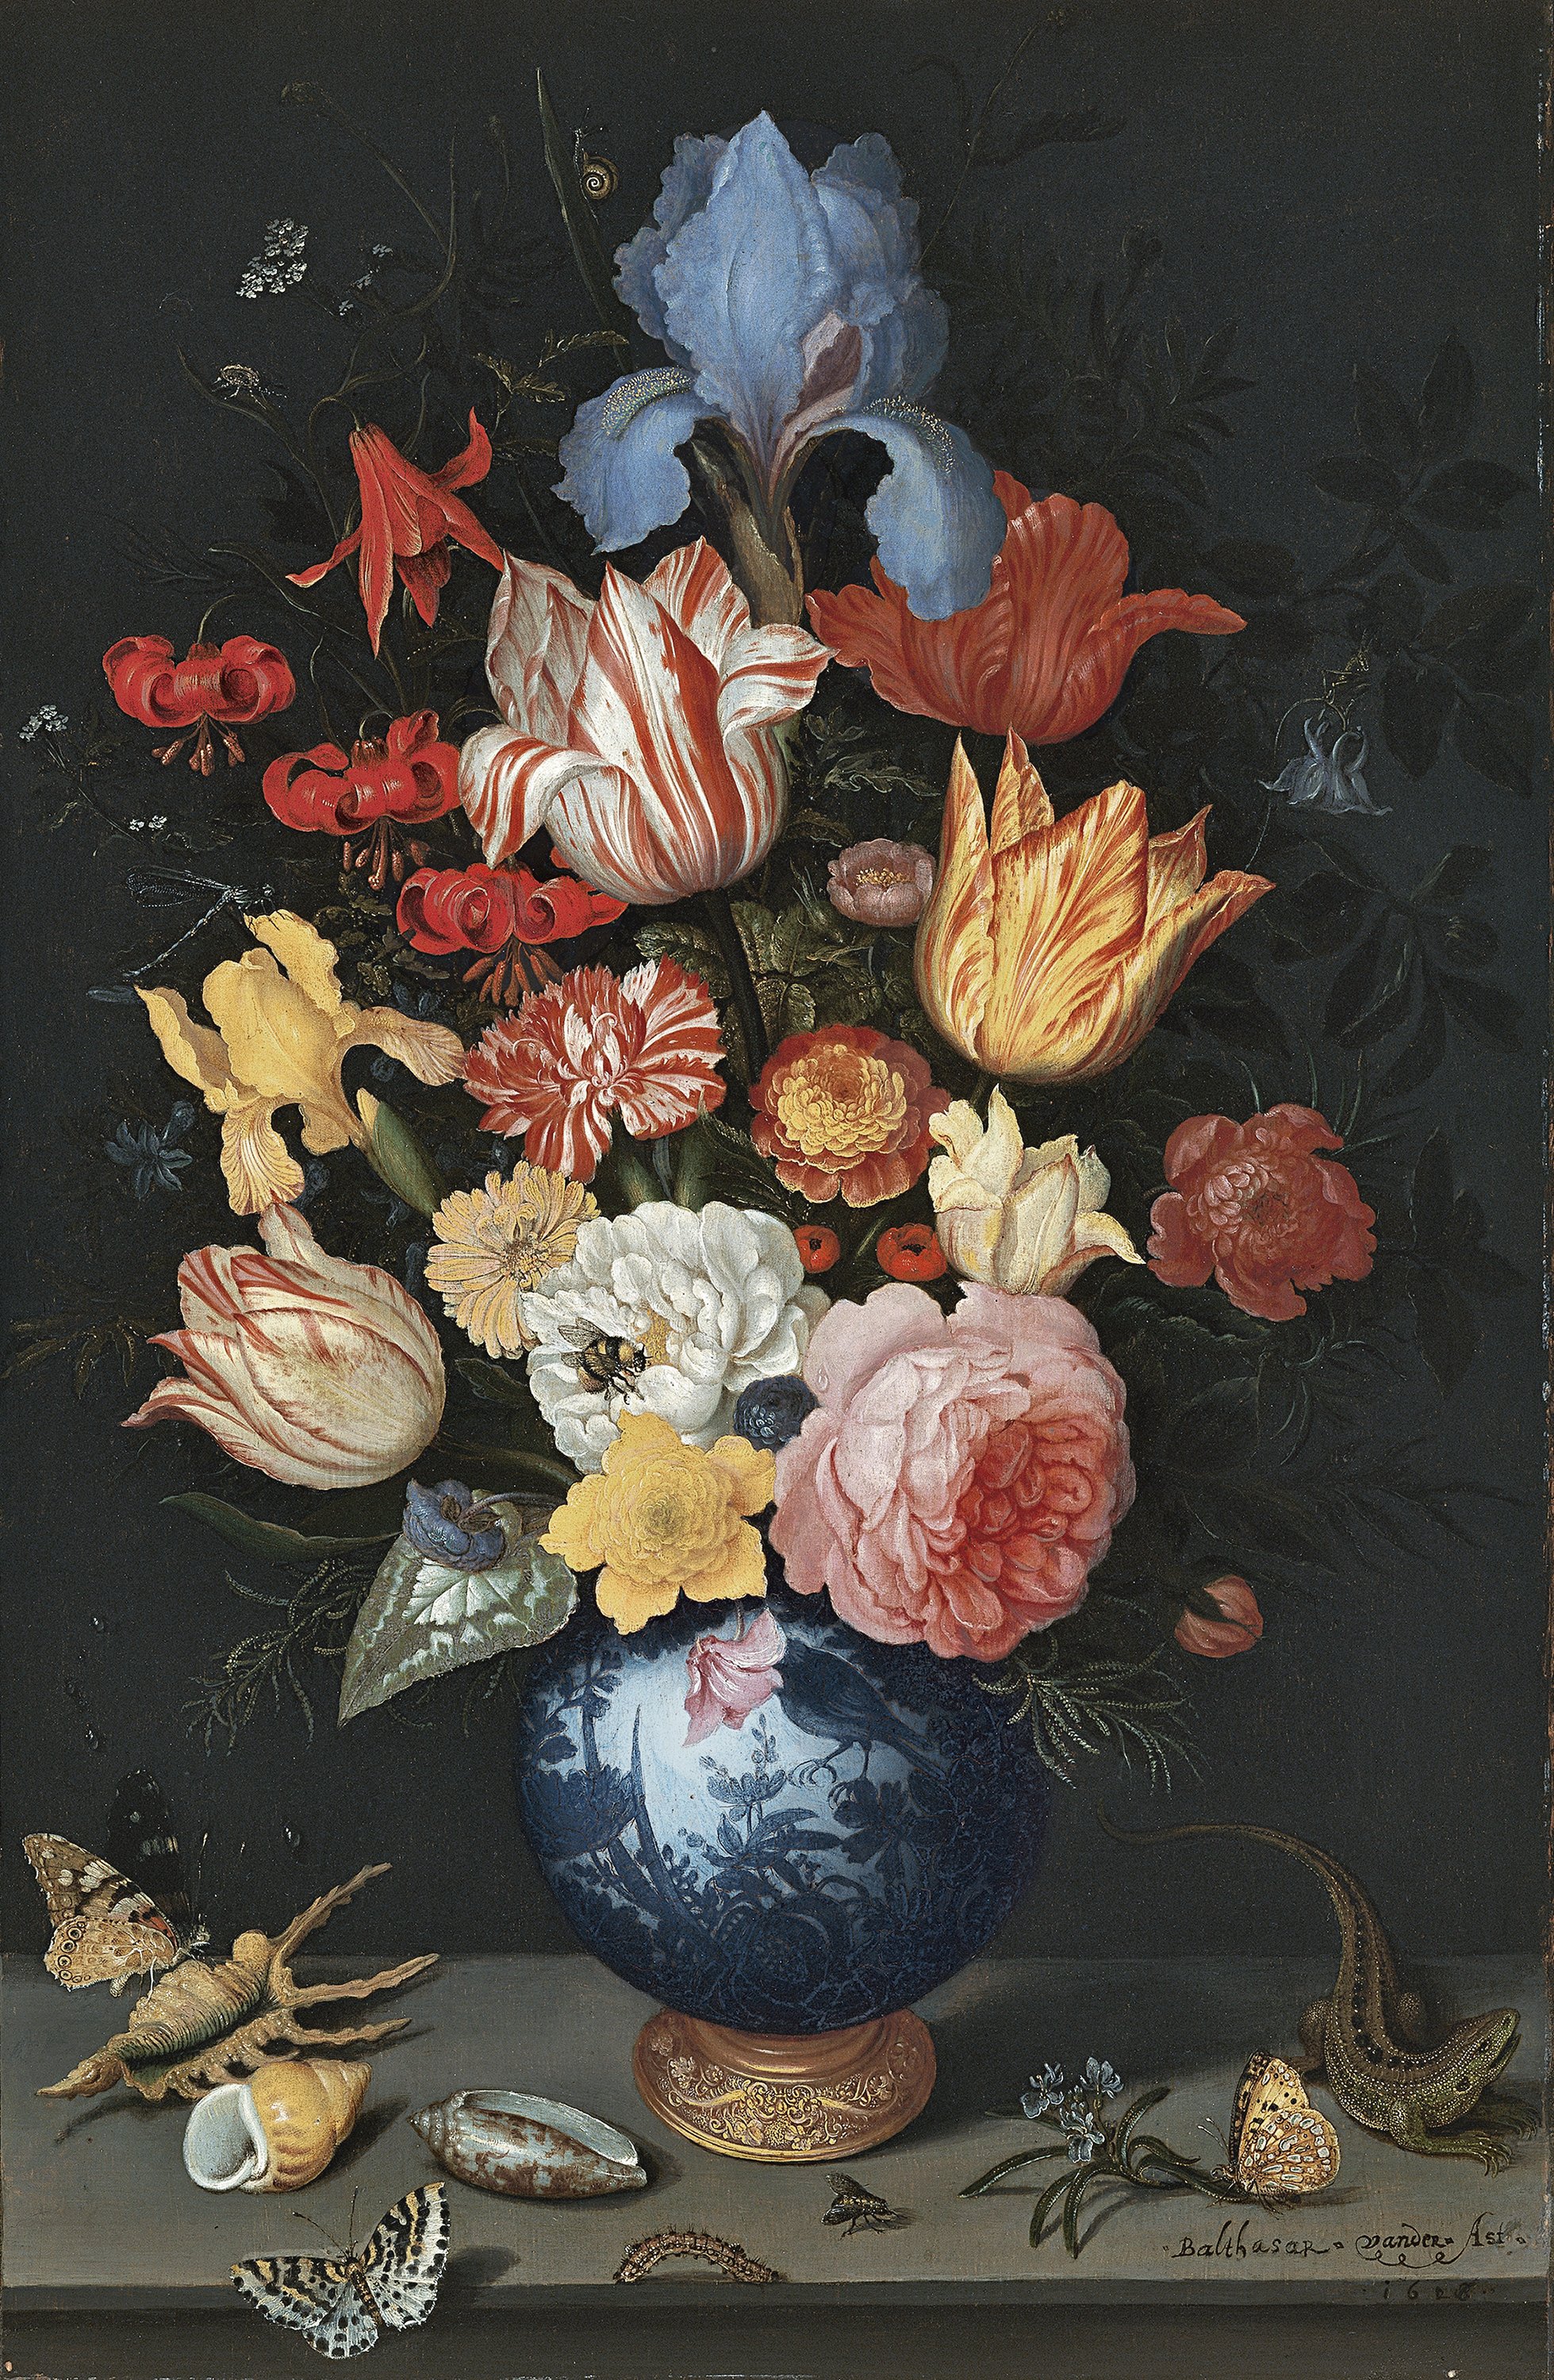 Vaso chino con flores, conchas e insectos. Balthasar van der Ast